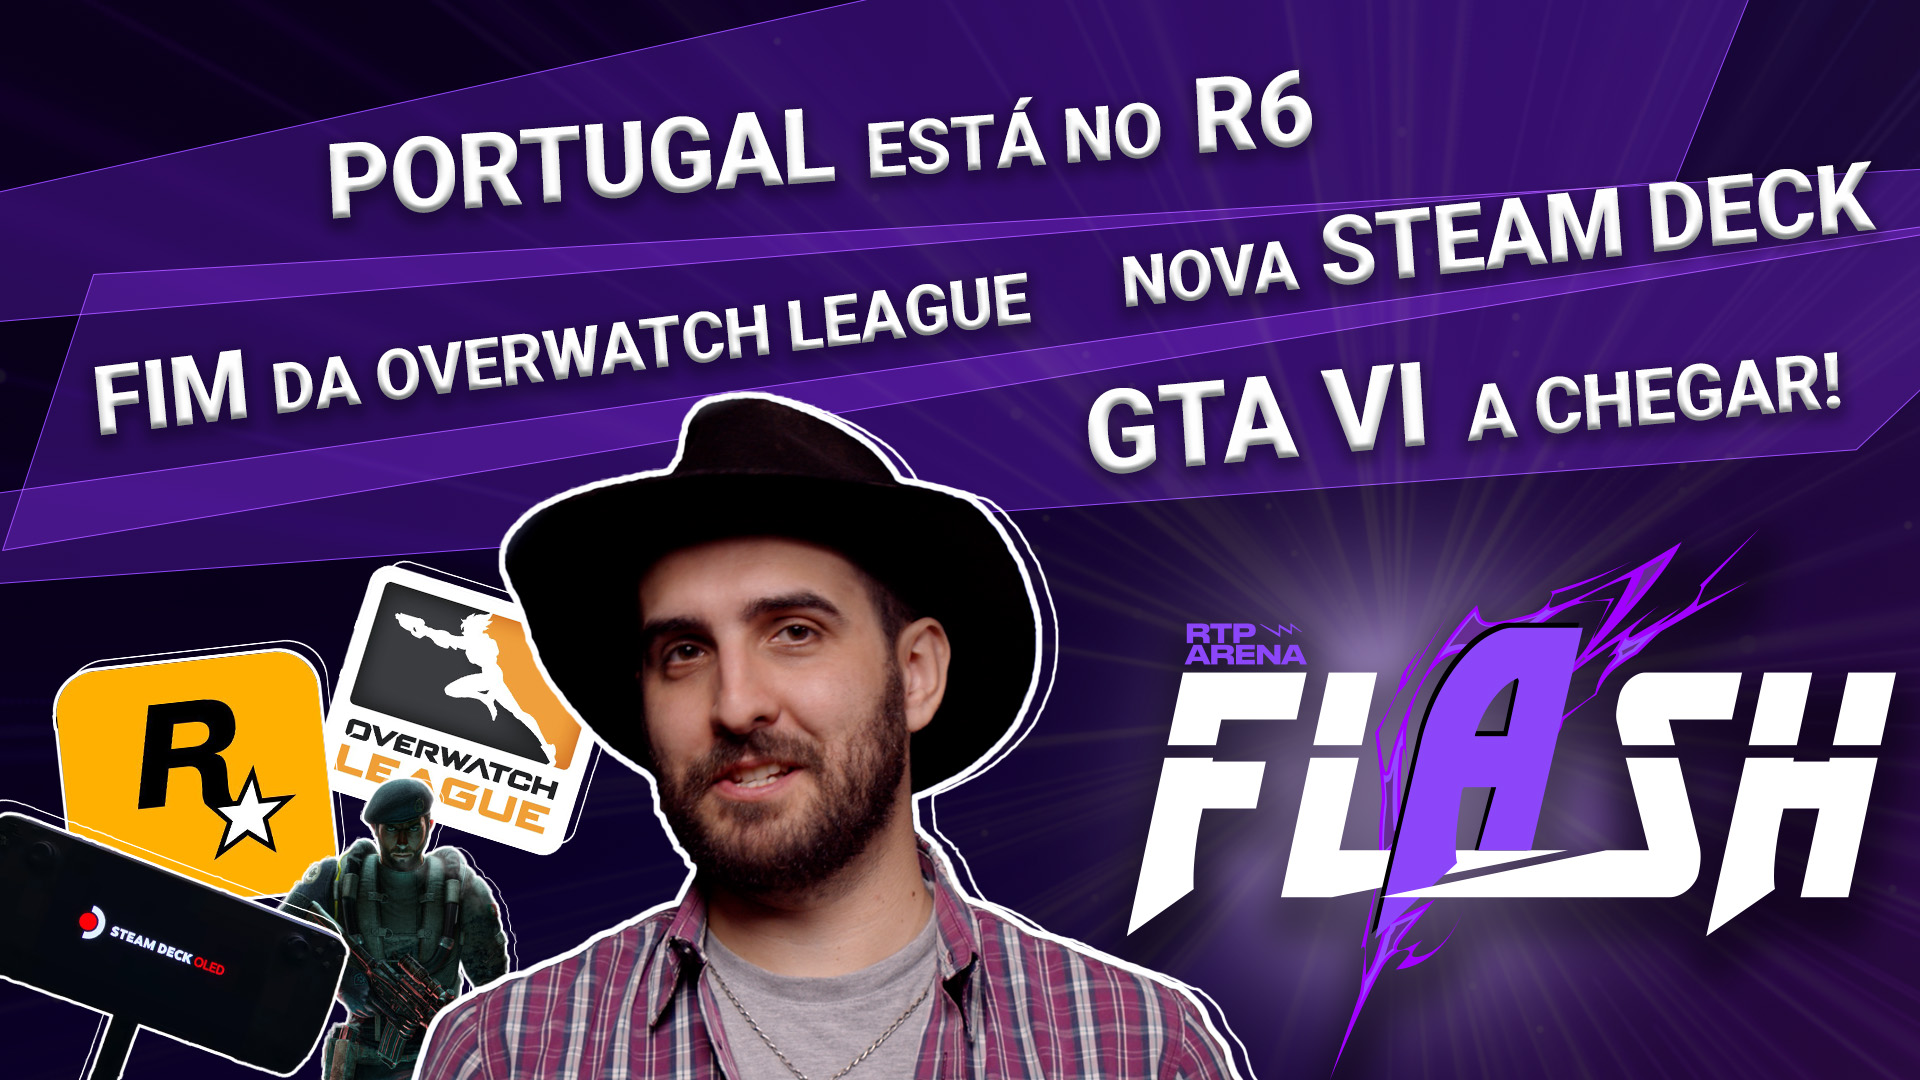 GTA VI, Portugal no R6, o Fim da Overwatch League e um novo Steam